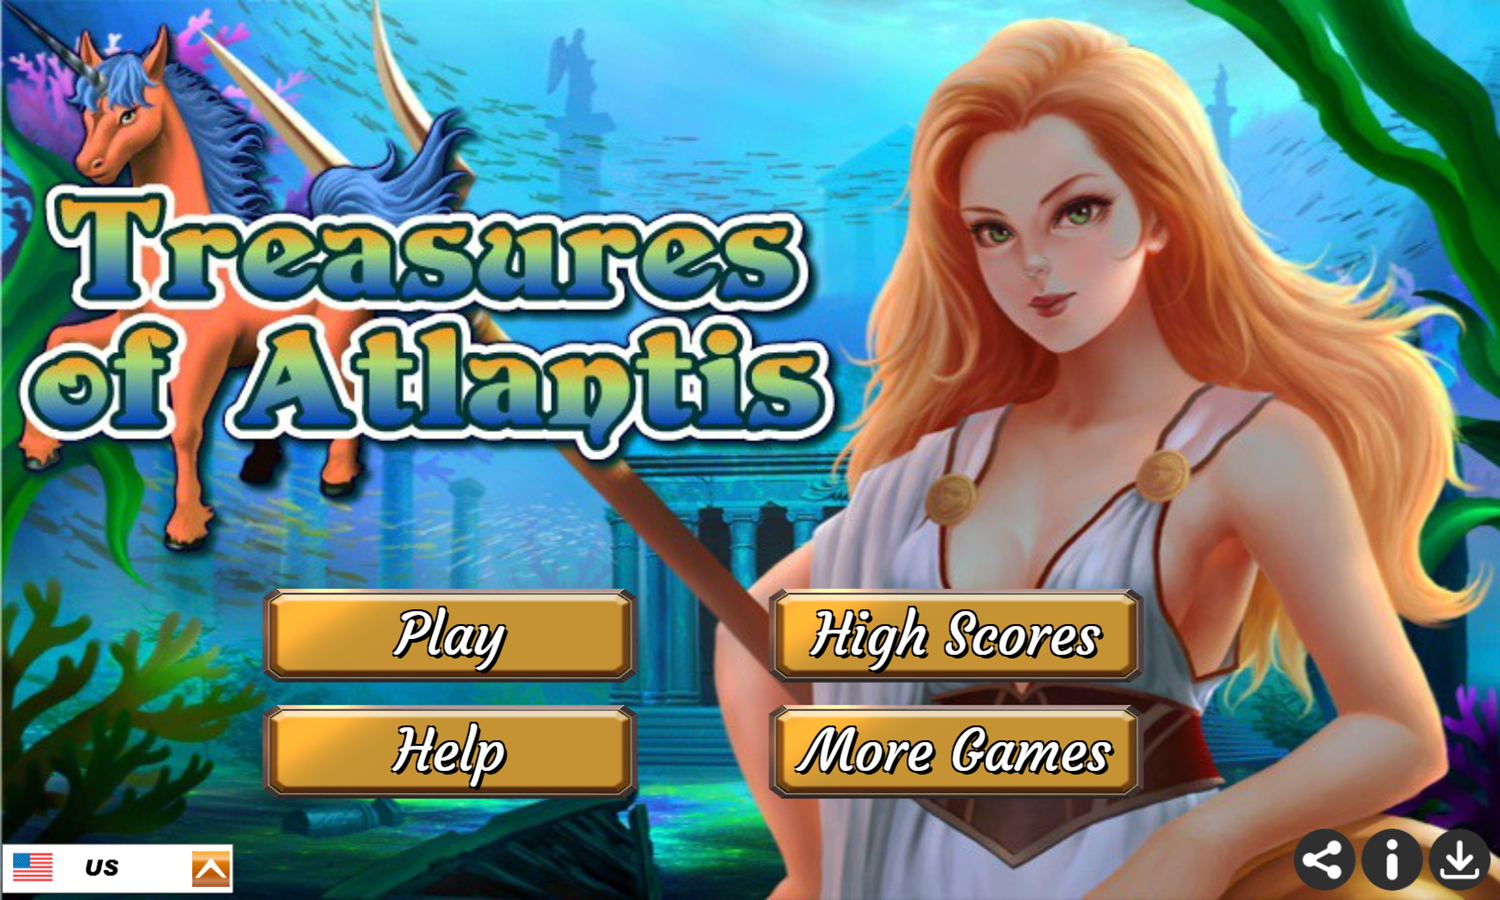 Treasures of Atlantis Game Welcome Screen Screenshot.